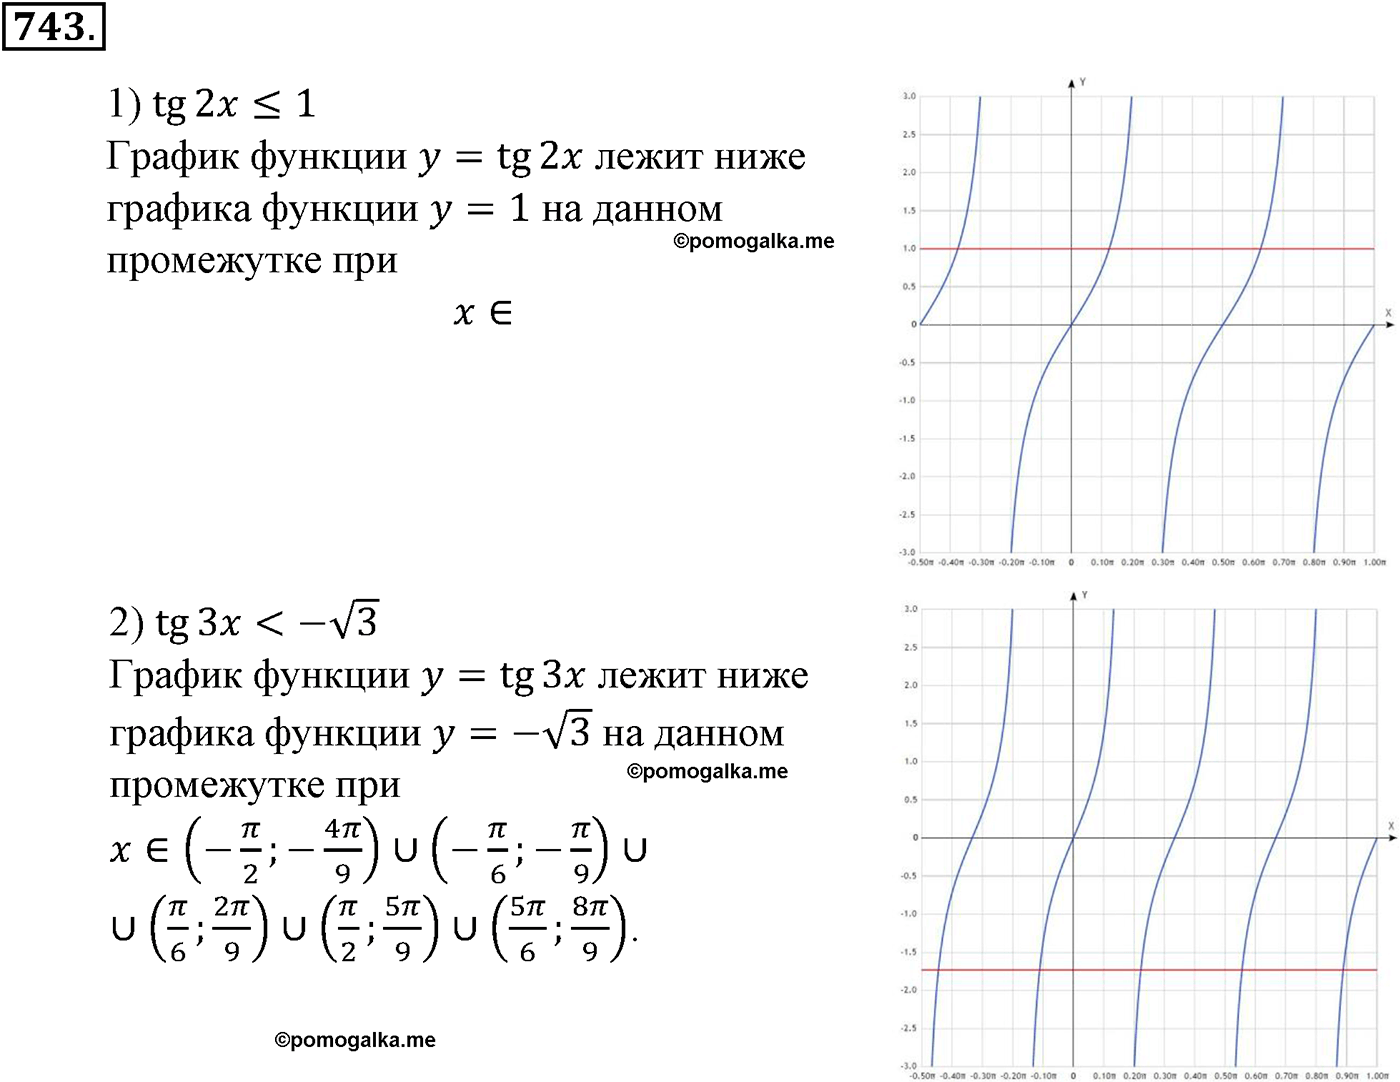 разбор задачи №743 по алгебре за 10-11 класс из учебника Алимова, Колягина